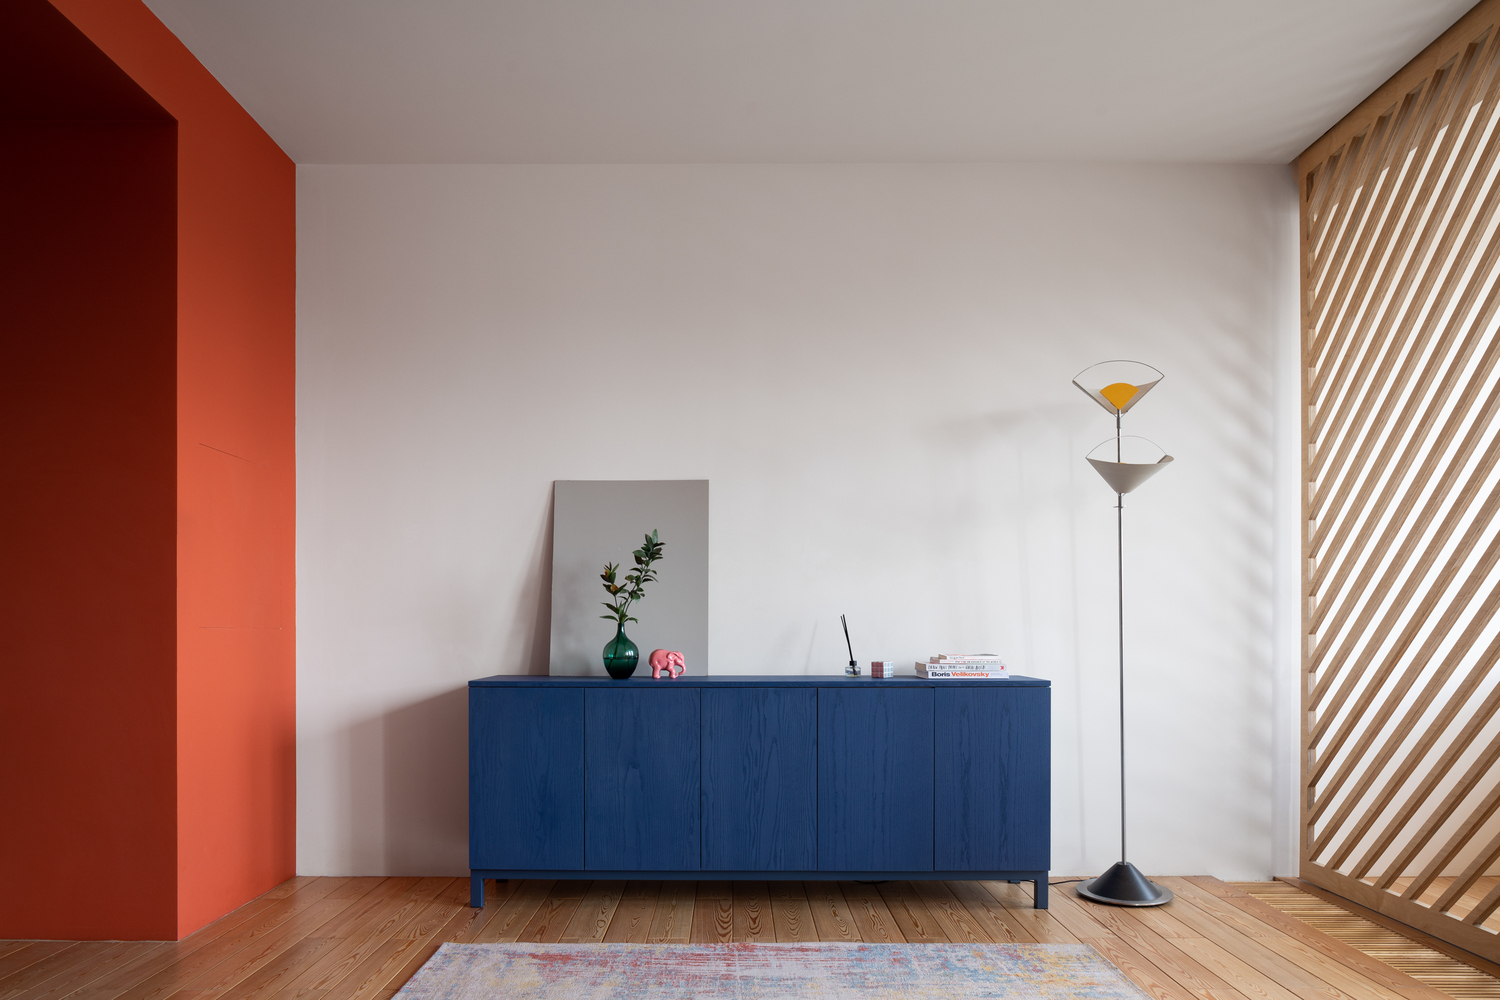 Tủ lưu trữ sơn màu xanh lam đậm đối diện khu vực tiếp khách, nổi bật trên nền tường màu trắng và sàn gỗ tự nhiên ấm áp.